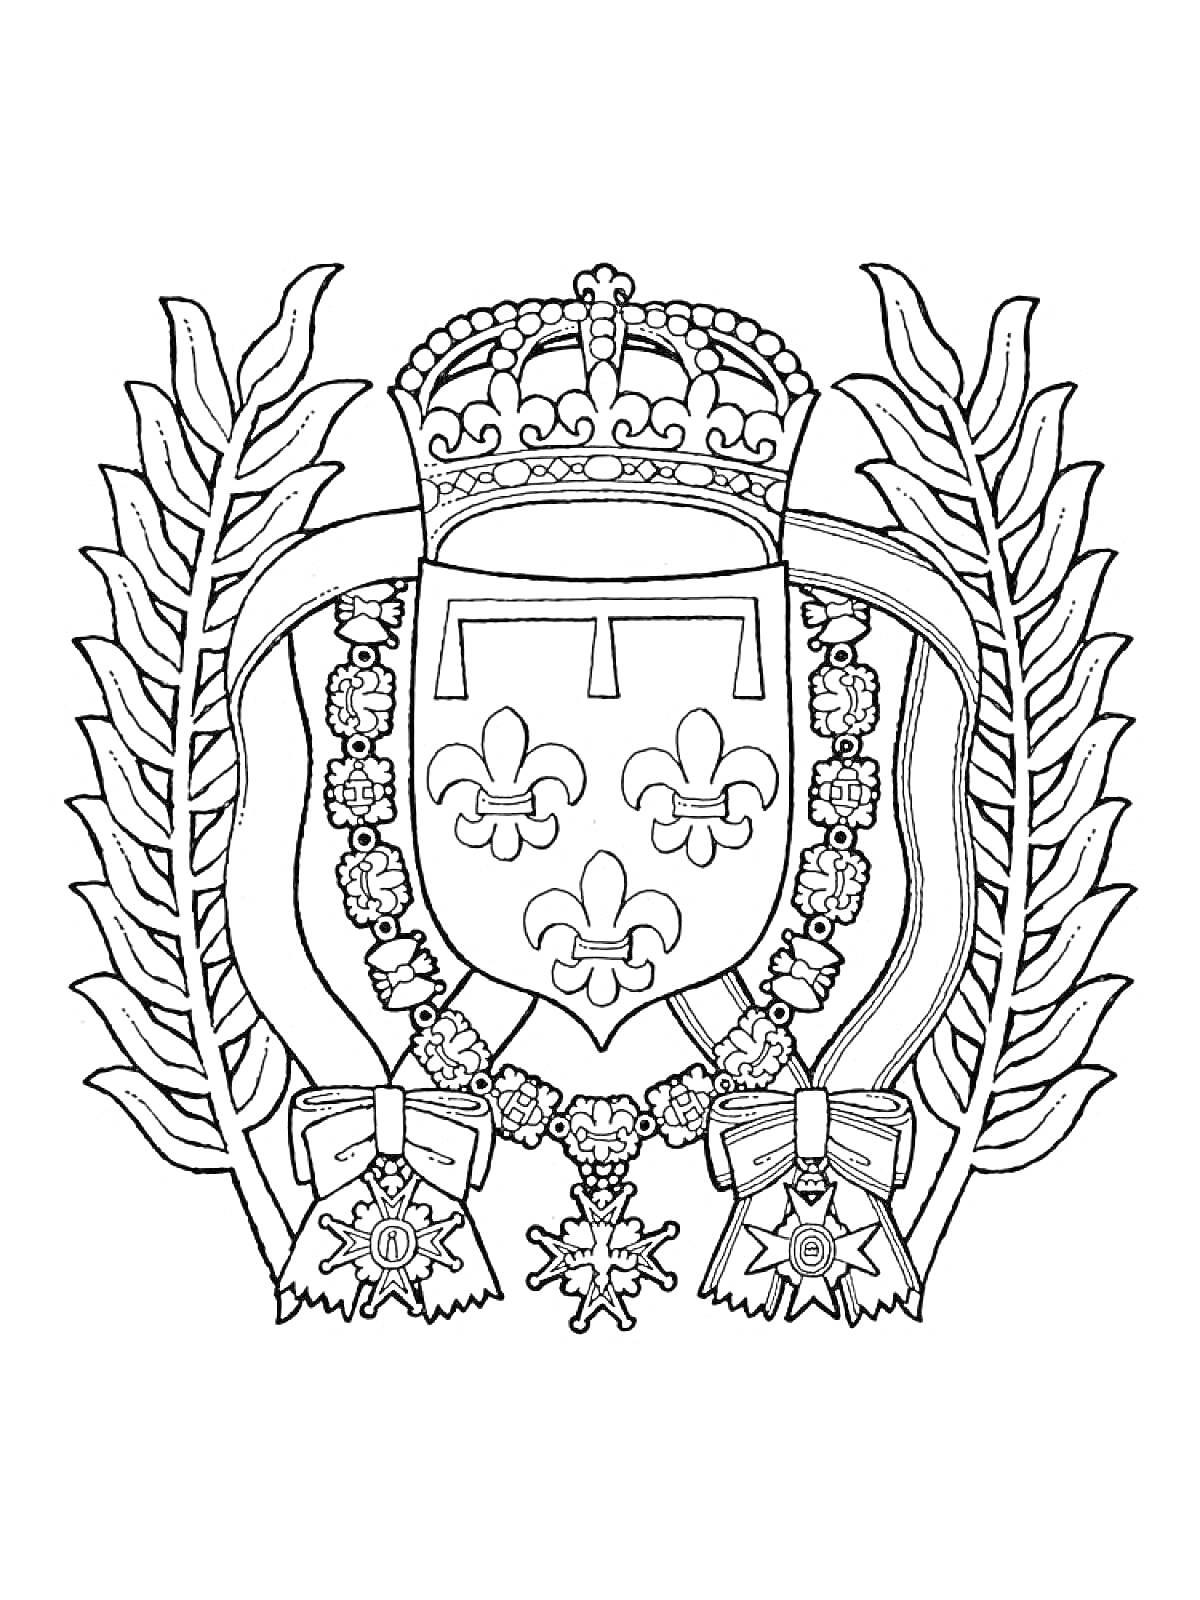 Герб с короной наверху, щитом с тремя лилиями в центре, окруженными лавровыми листьями и орденами